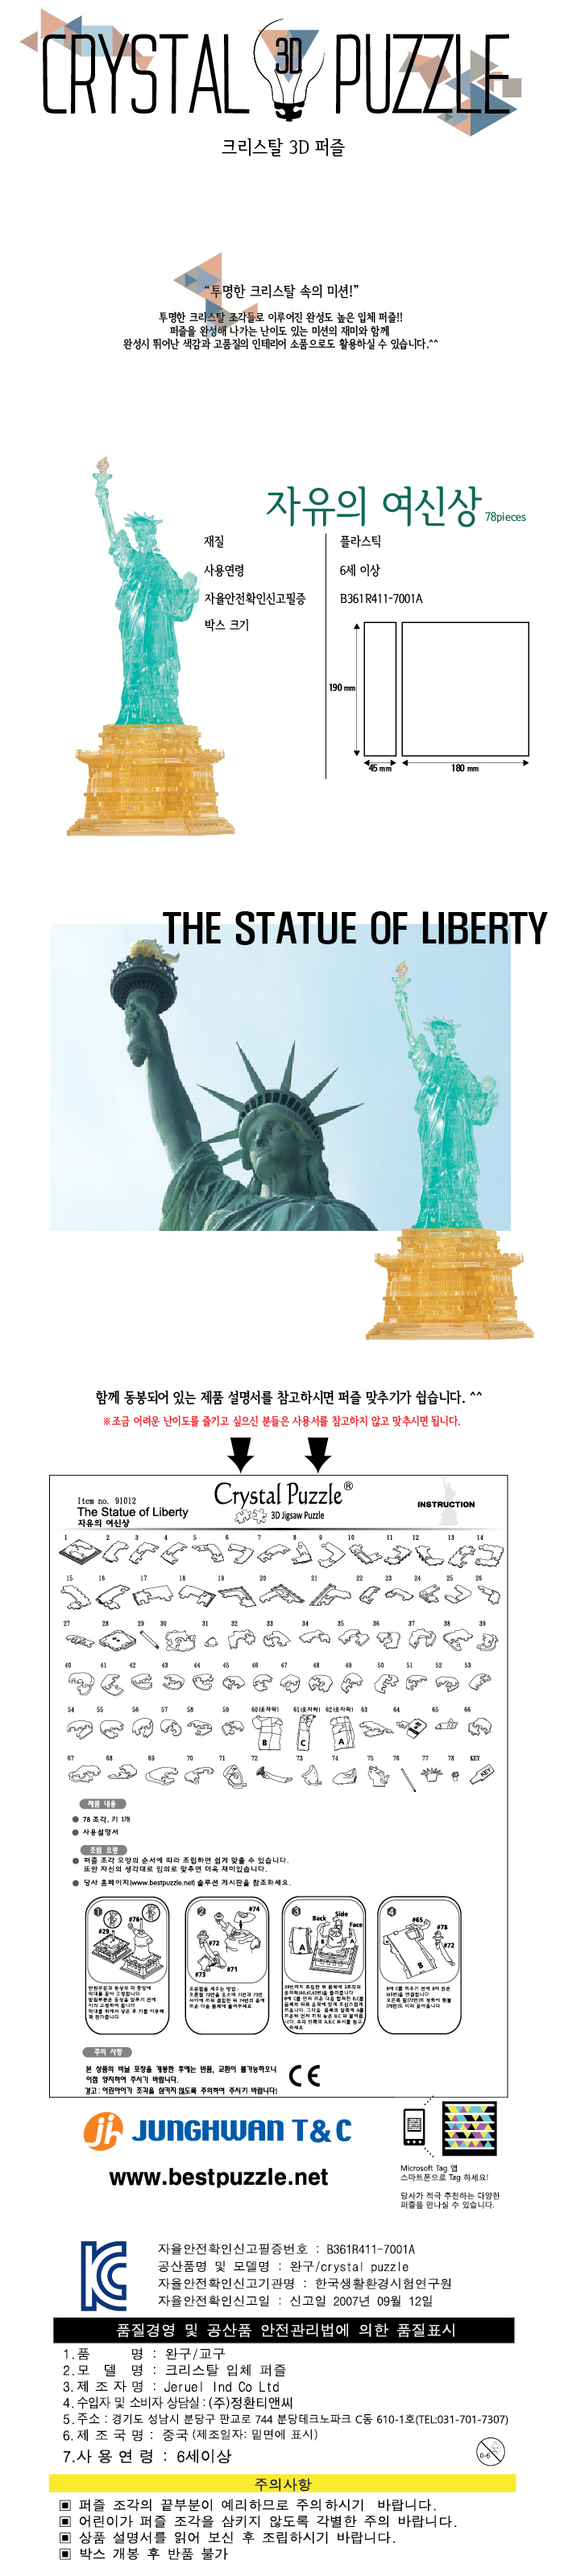 자유의 여신상(The Statue of Liberty) 28,000원 - 크리스탈퍼즐 키덜트/취미, 블록/퍼즐, 조각/퍼즐, 3D입체퍼즐 바보사랑 자유의 여신상(The Statue of Liberty) 28,000원 - 크리스탈퍼즐 키덜트/취미, 블록/퍼즐, 조각/퍼즐, 3D입체퍼즐 바보사랑